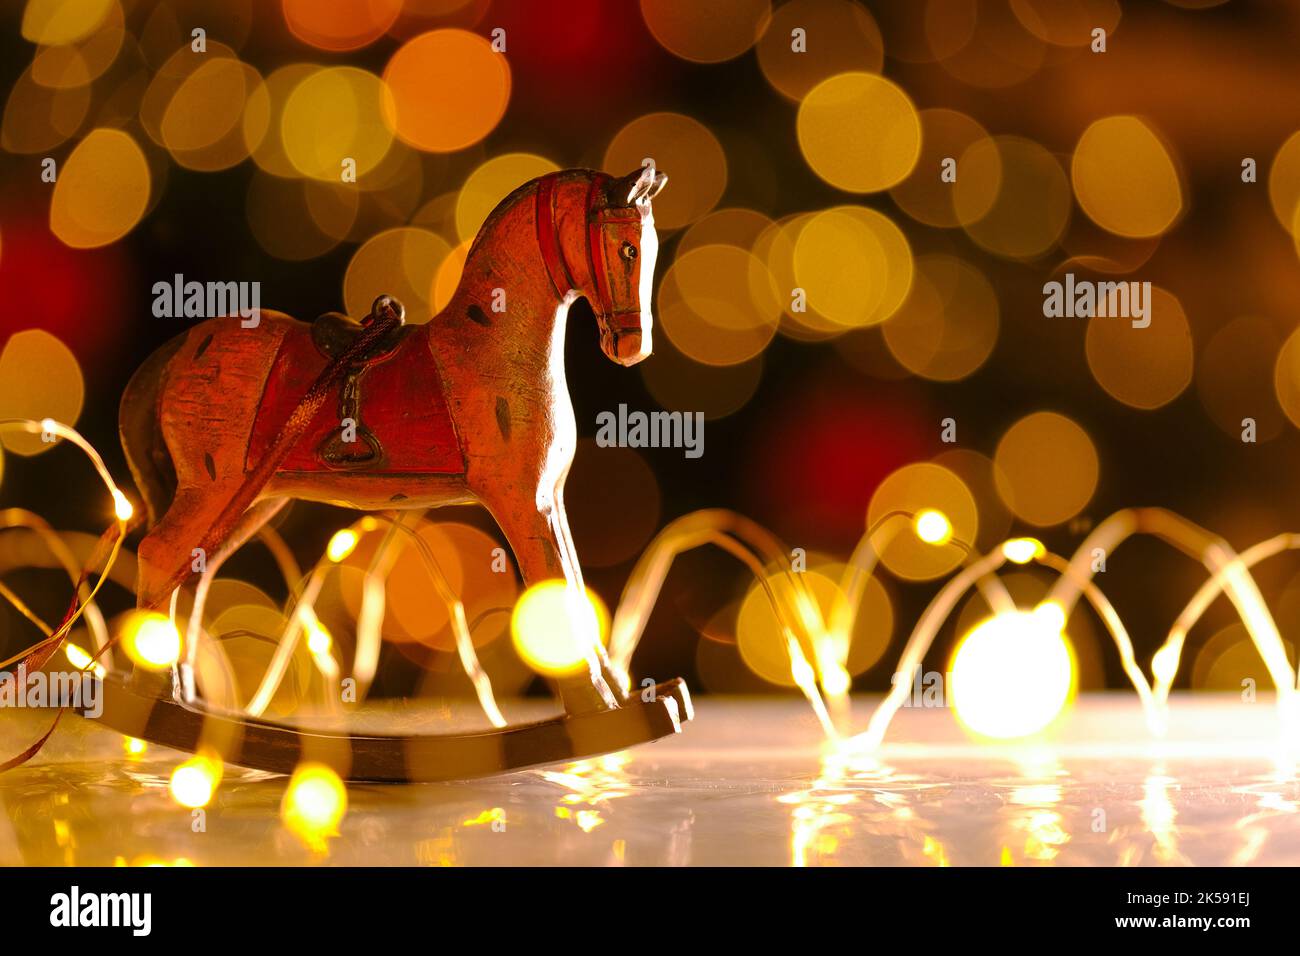 Arrière-plan de Noël. Cheval en bois sur fond de guirlandes brillantes.décor de Noël dans des couleurs chaudes.ambiance festive. Jouets pour arbres de Noël de style vintage Banque D'Images